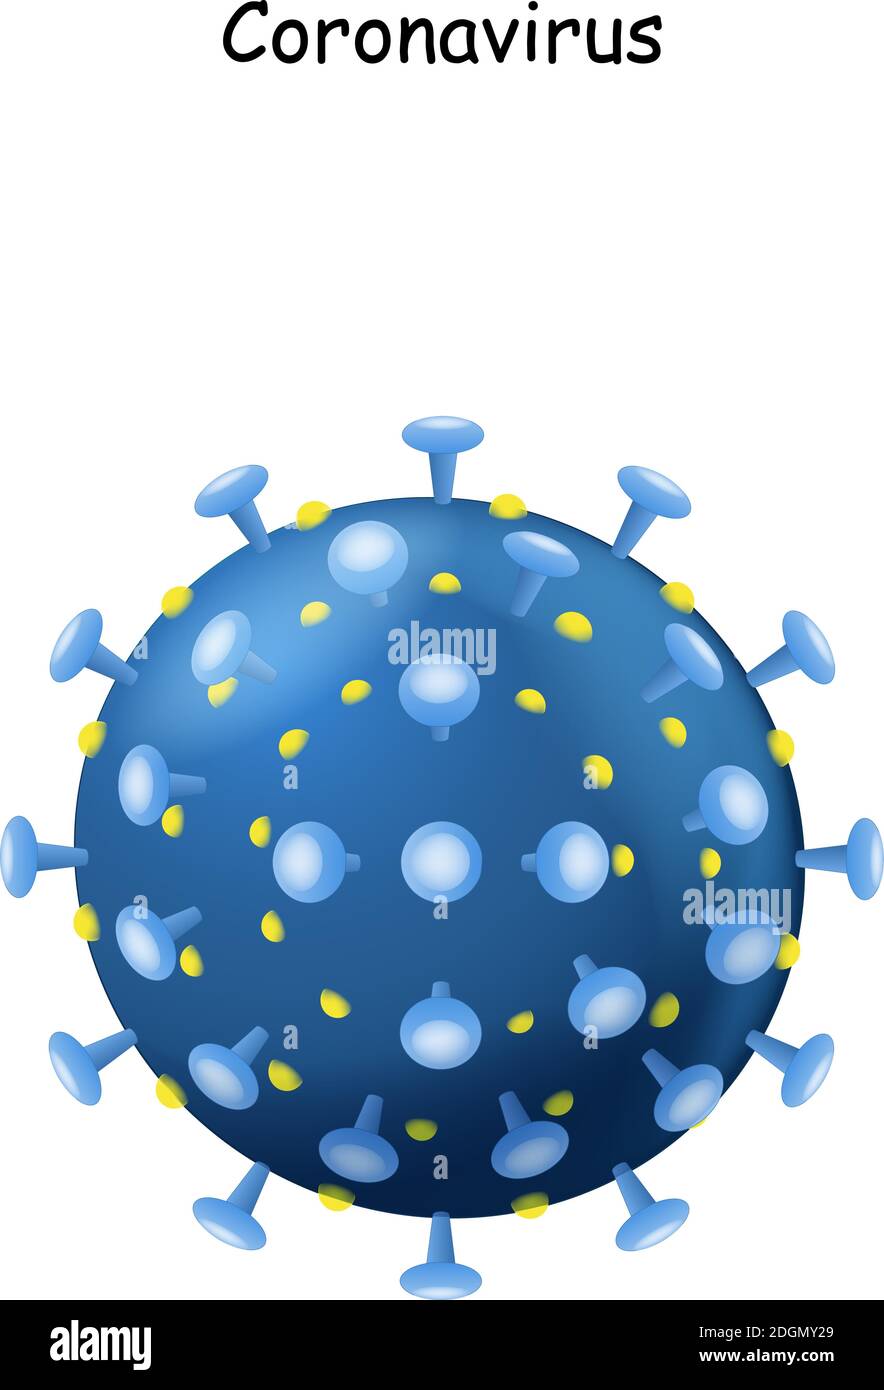 Virus Corona. Virion de coronavirus sur fond blanc. 2019-nCoV. Le virus qui a causé l'épidémie de pneumonie en Chine. Illustration vectorielle Illustration de Vecteur